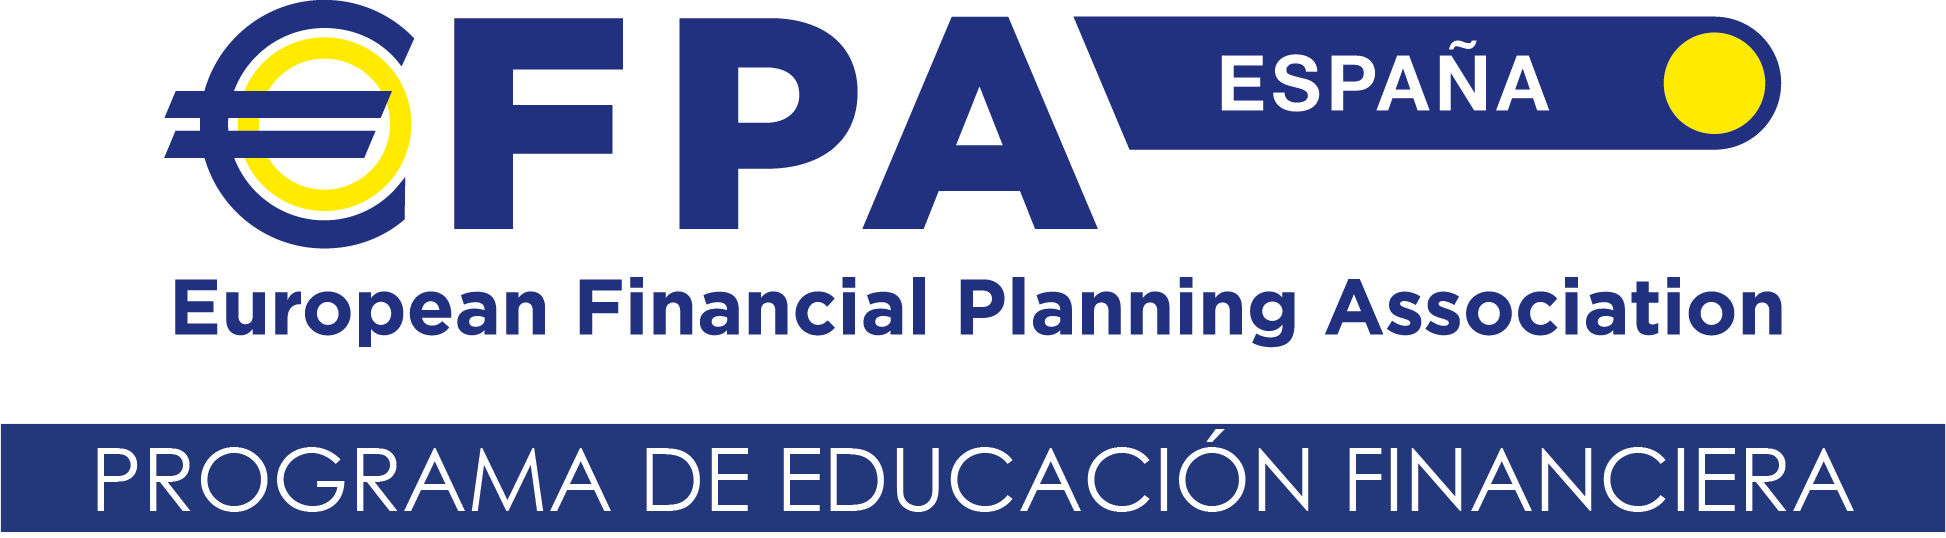 EFPA Educación financiera